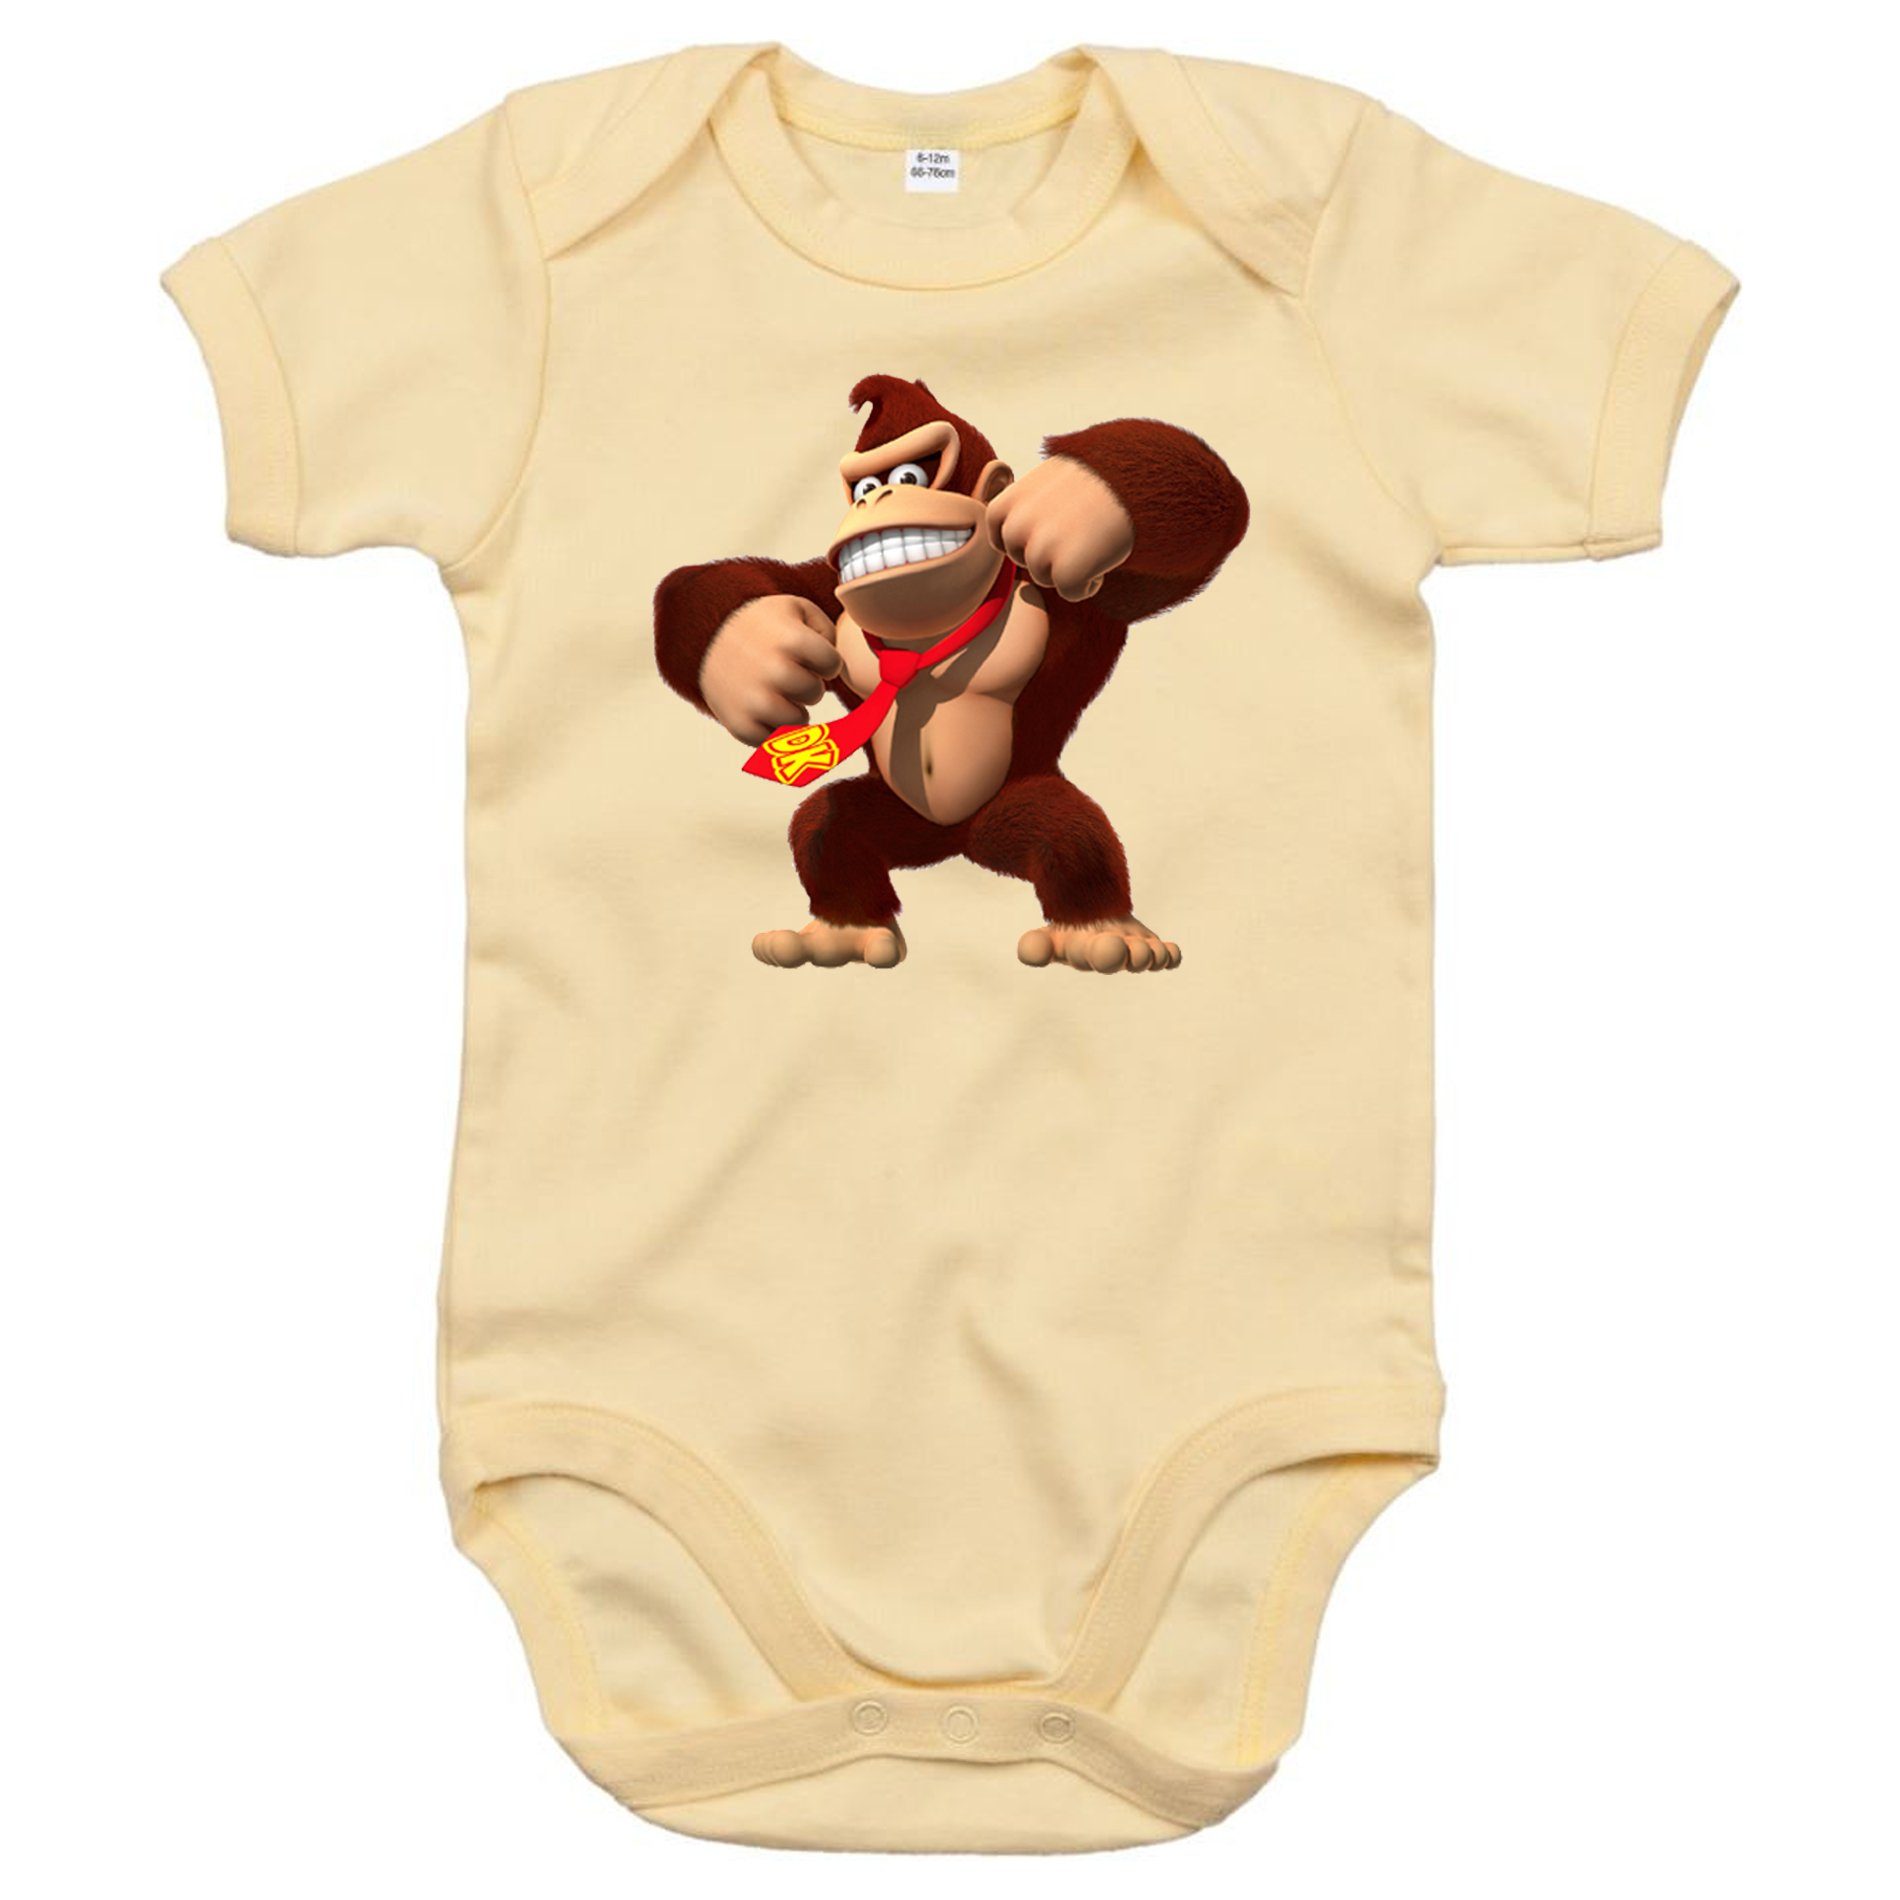 Blondie & Brownie Strampler Kinder Baby Donkey Kong Gorilla Affe Nintendo mit Druckknopf Beige